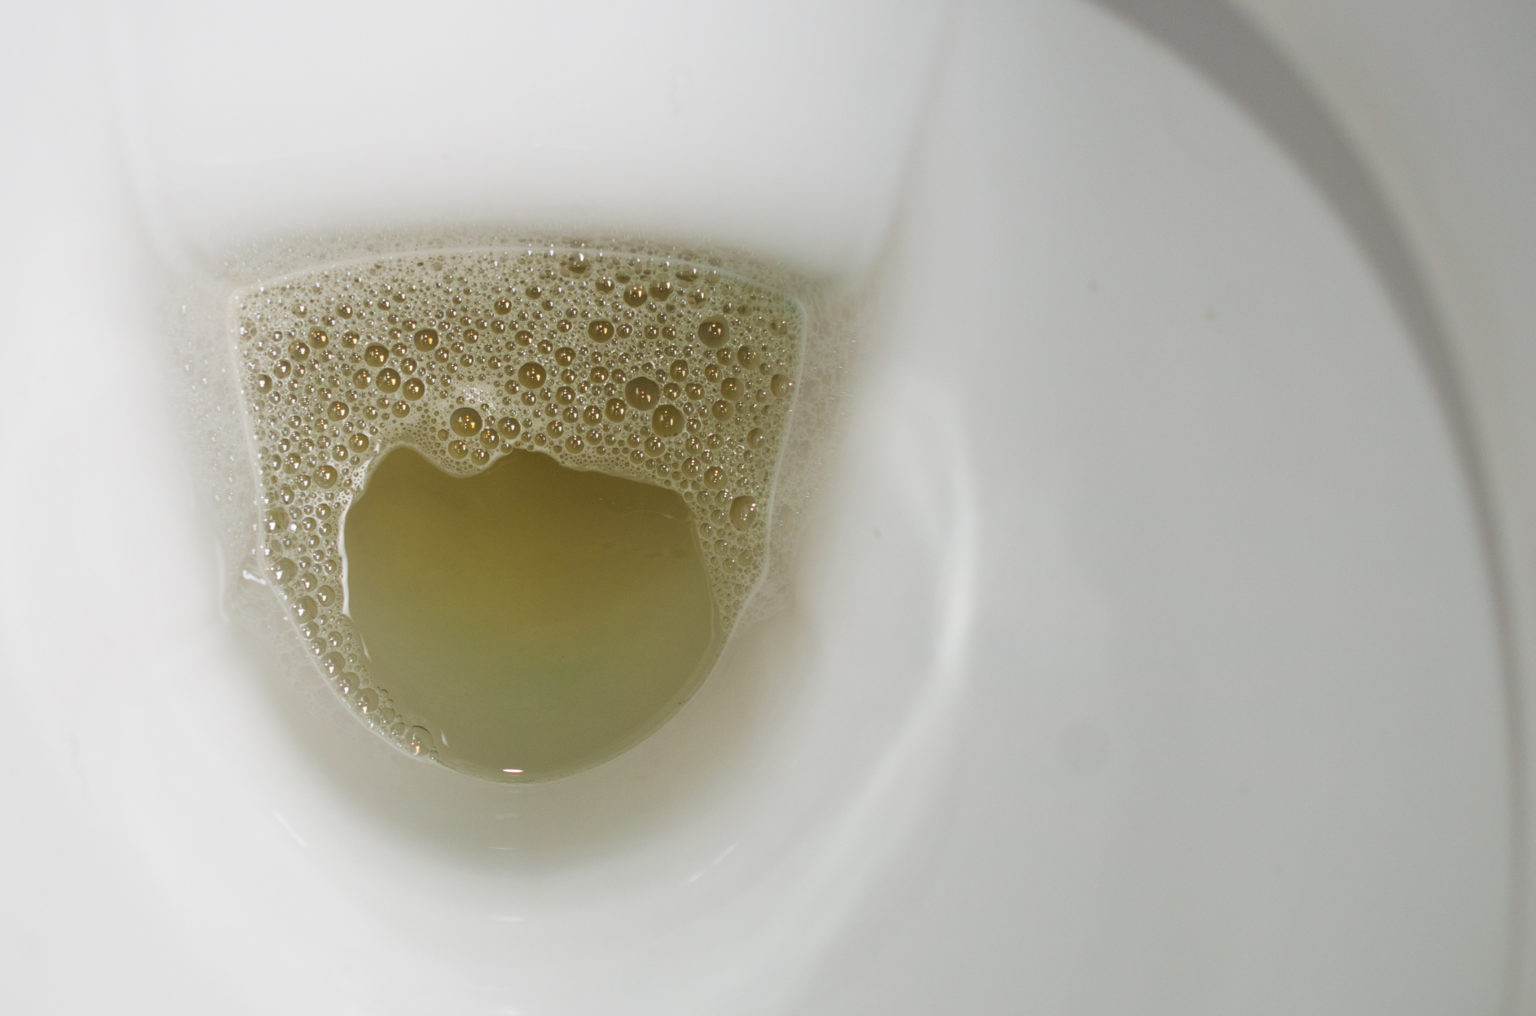 Foamy Urine: Is it a Symptom of a Kidney Disease? | BlackDoctor.org